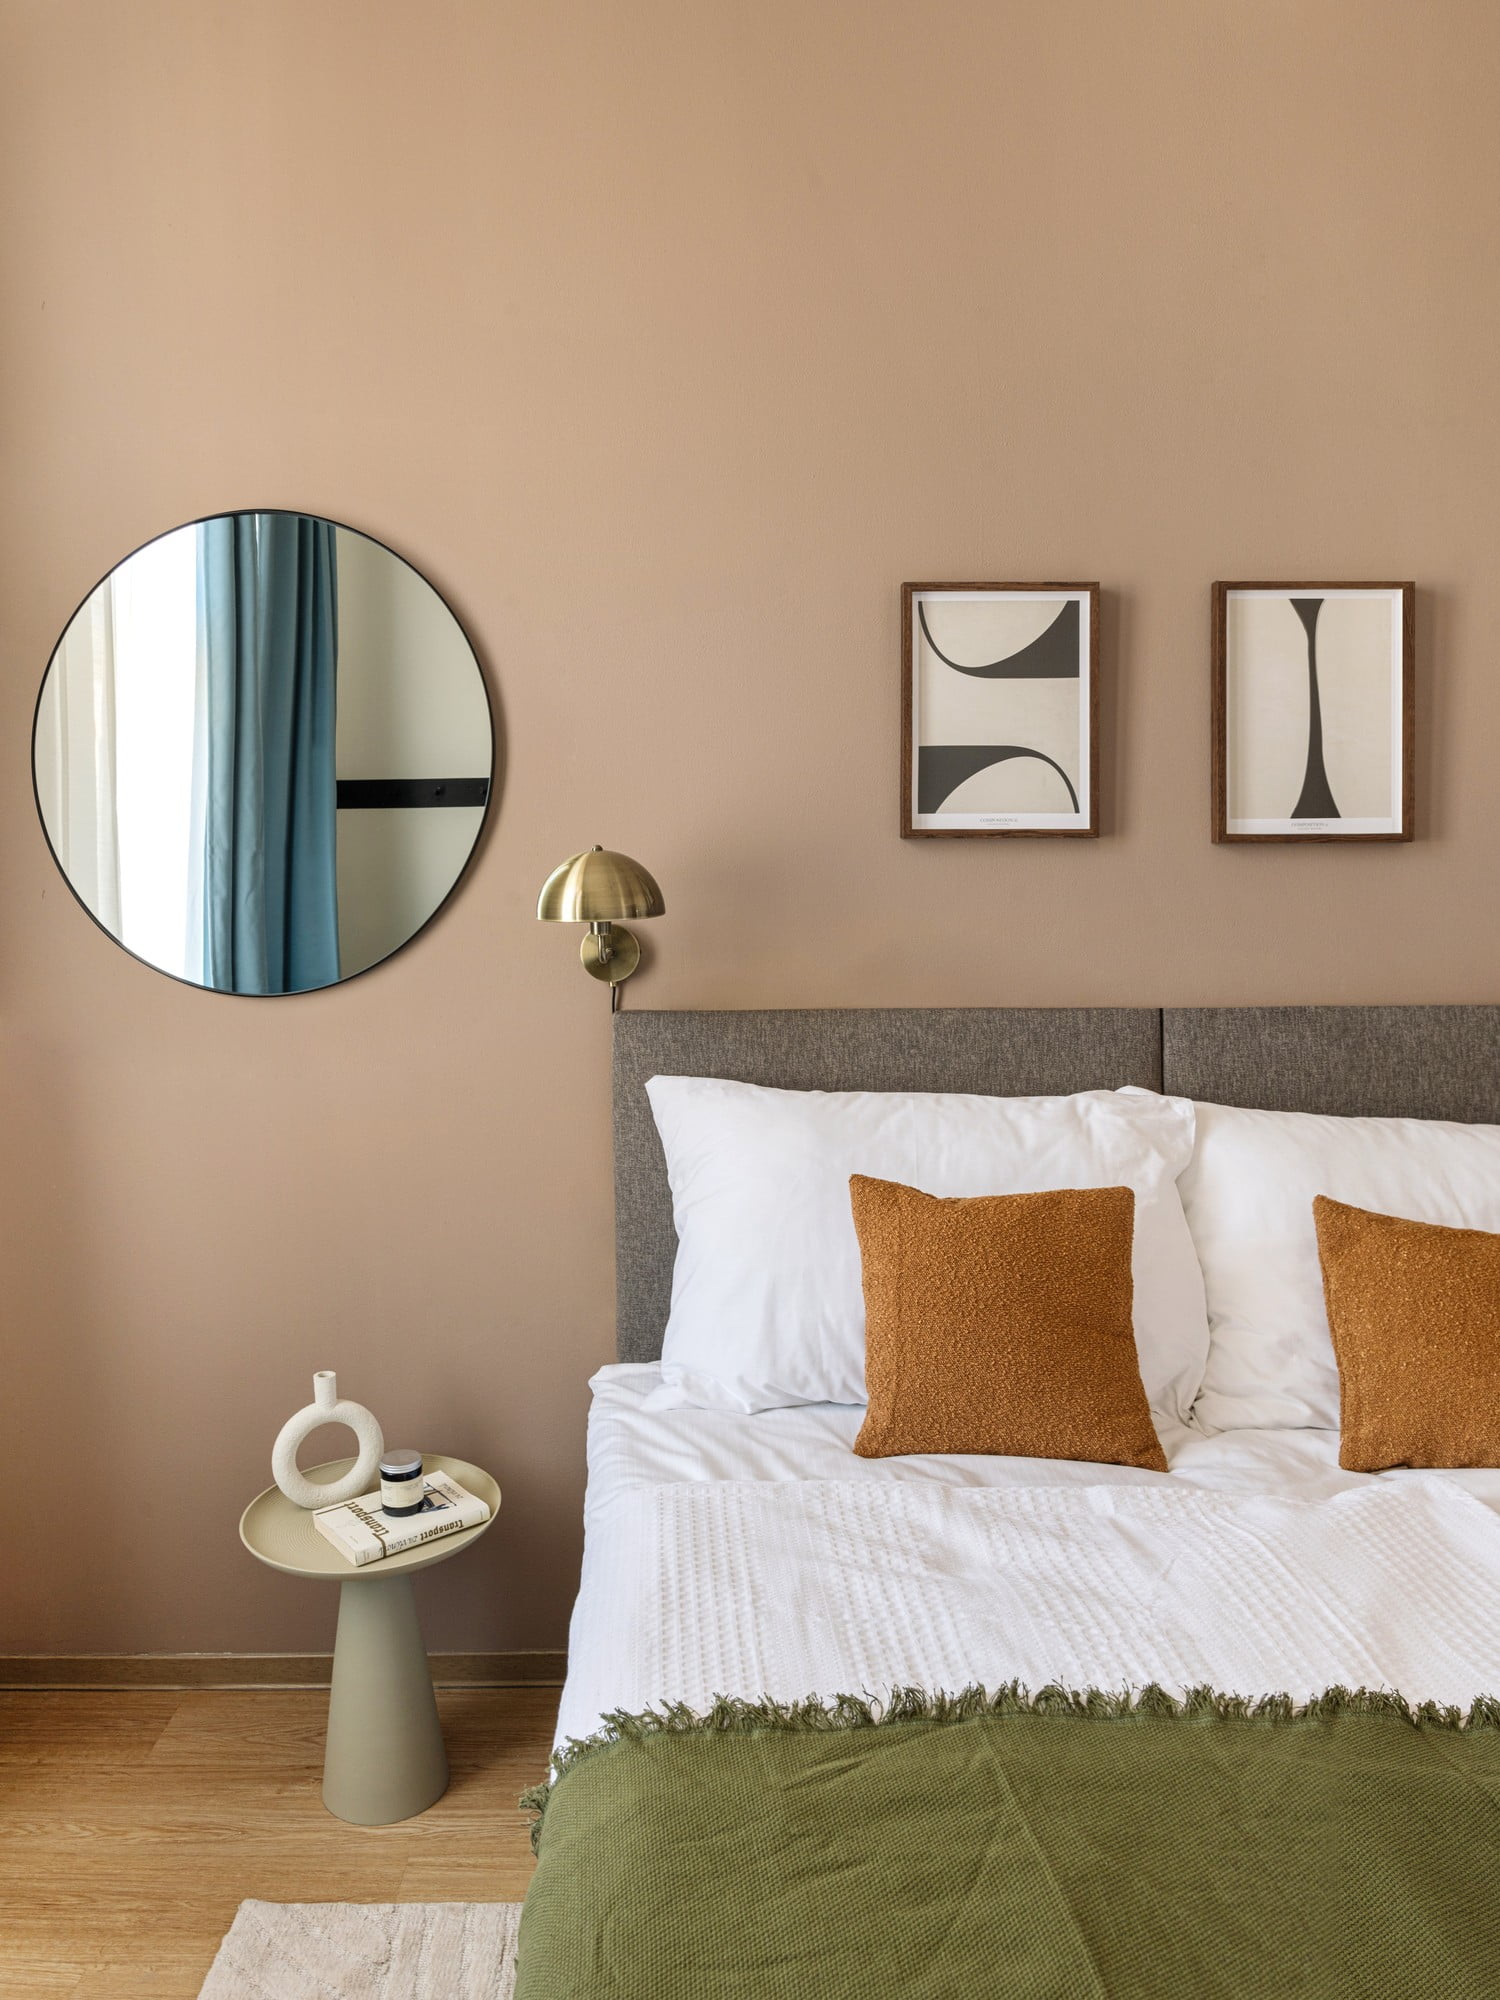 Într-un dormitor modern, calmul vizual este important. Mobilierul are forme simple și sunt excluse decorațiunile inutile.